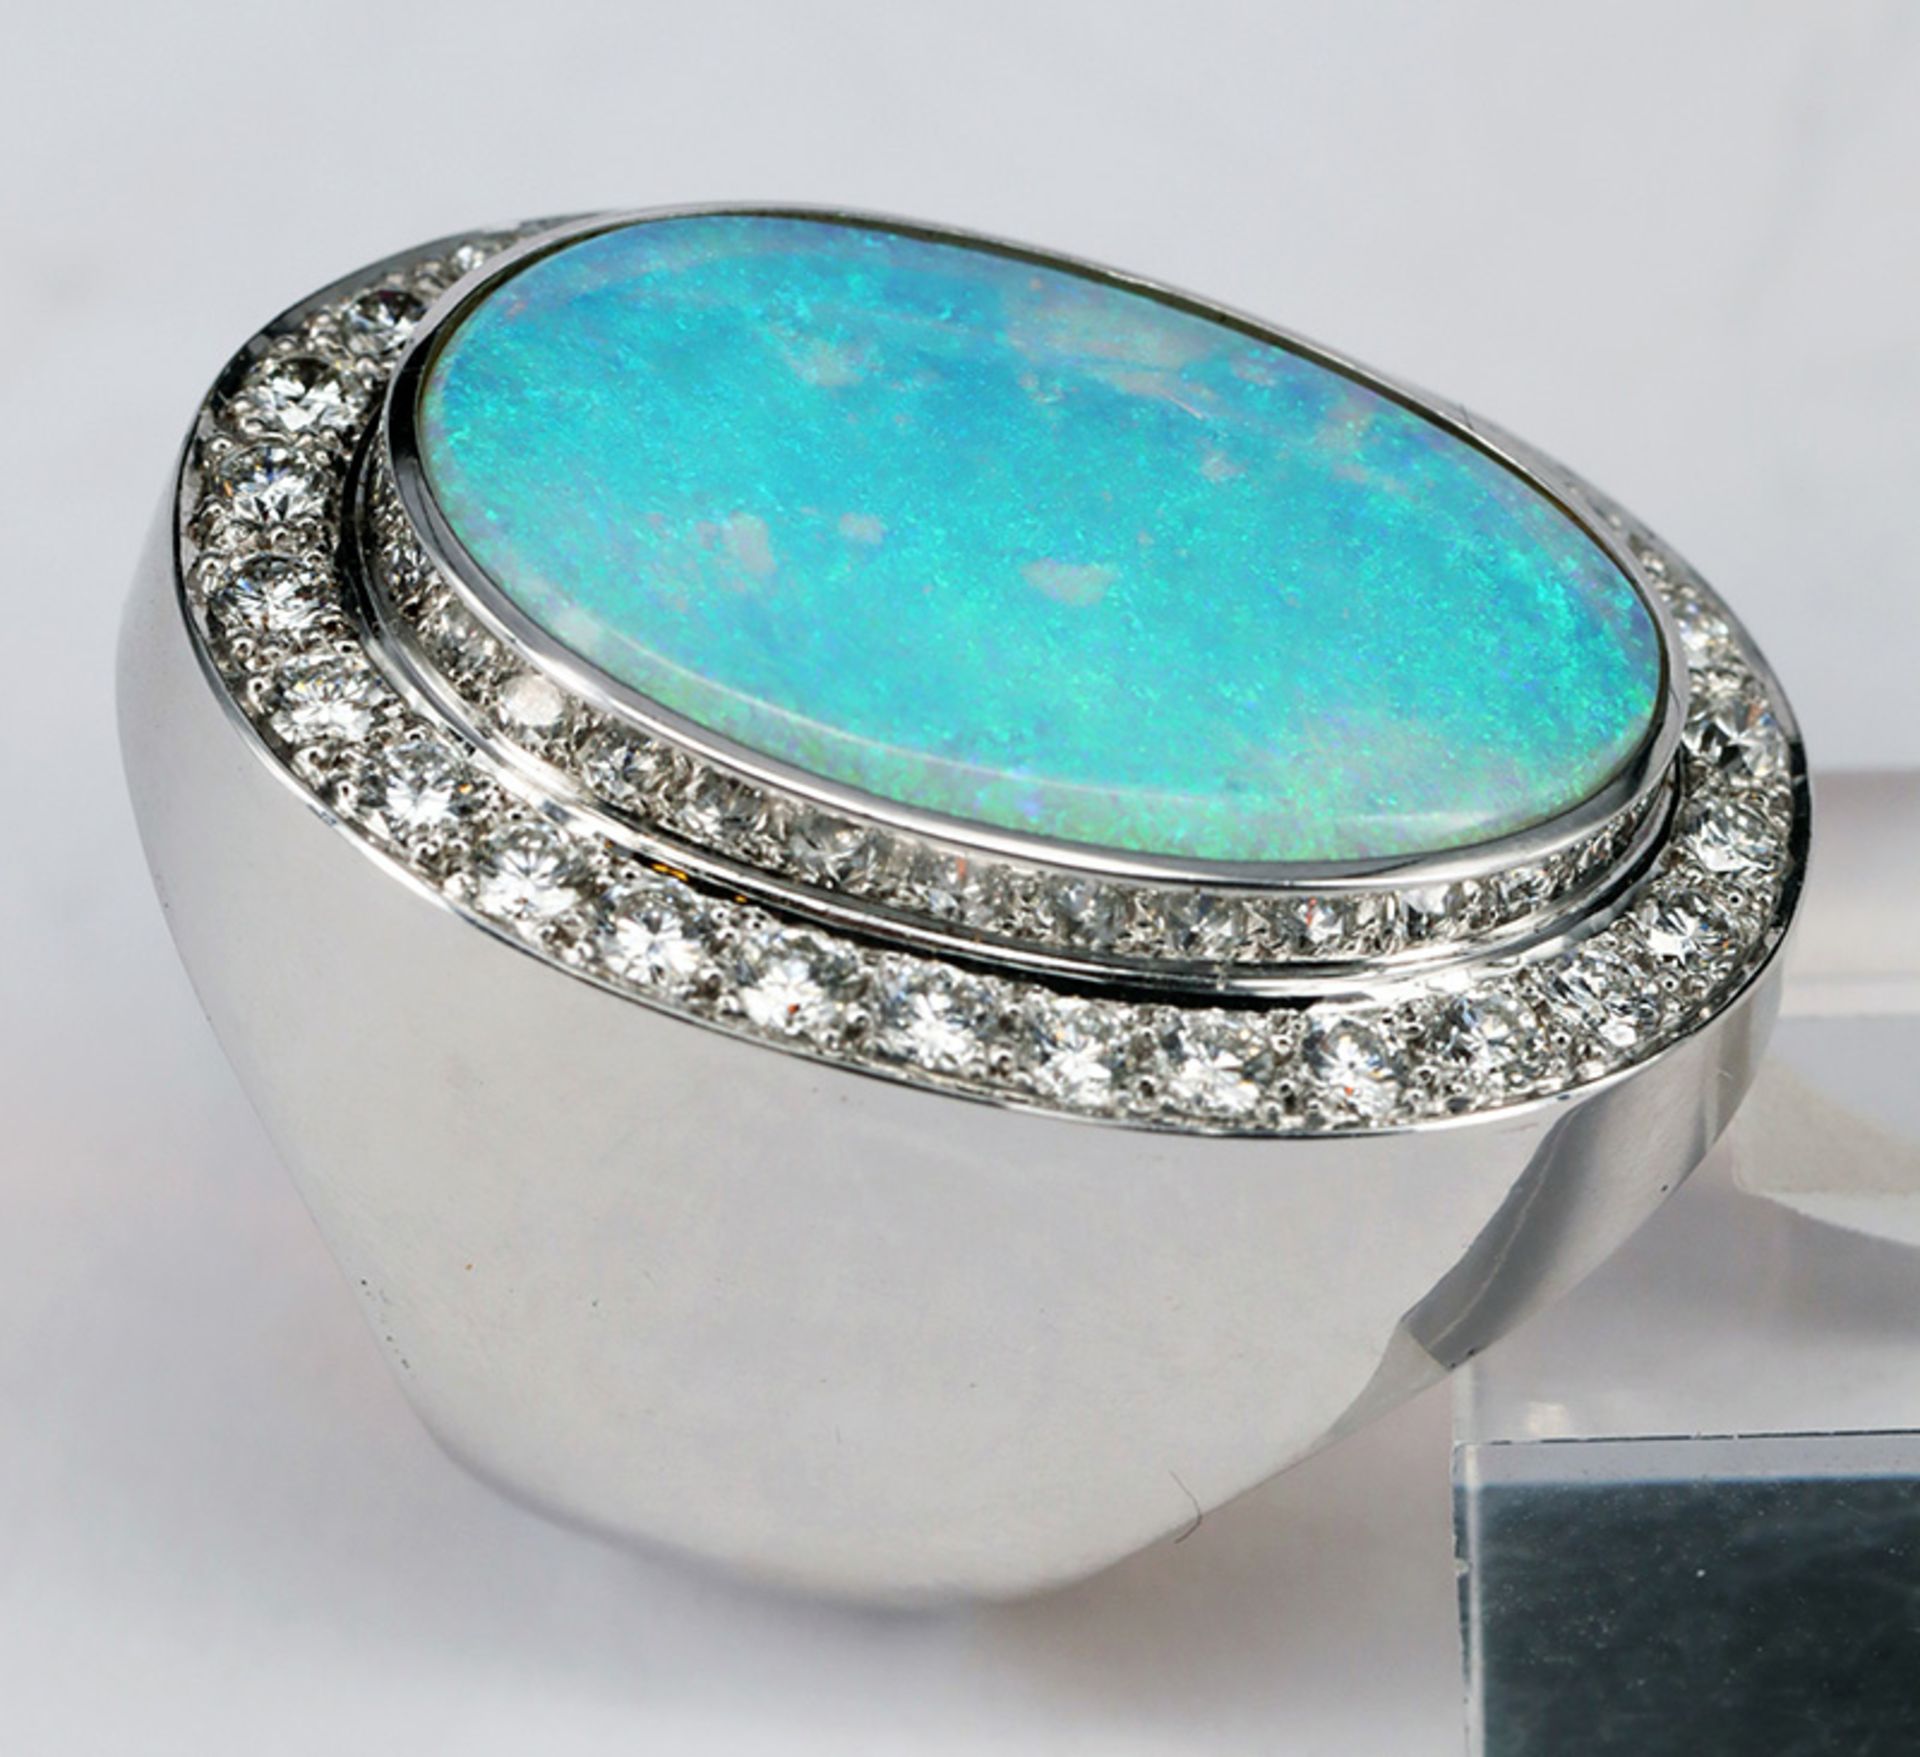 Ring, 750er WG, Handarbeit, mit türkisblauem Opal, 15,5 mm x 24 mm, sowie 28 Brillanten à 0,04 ct, - Image 4 of 6